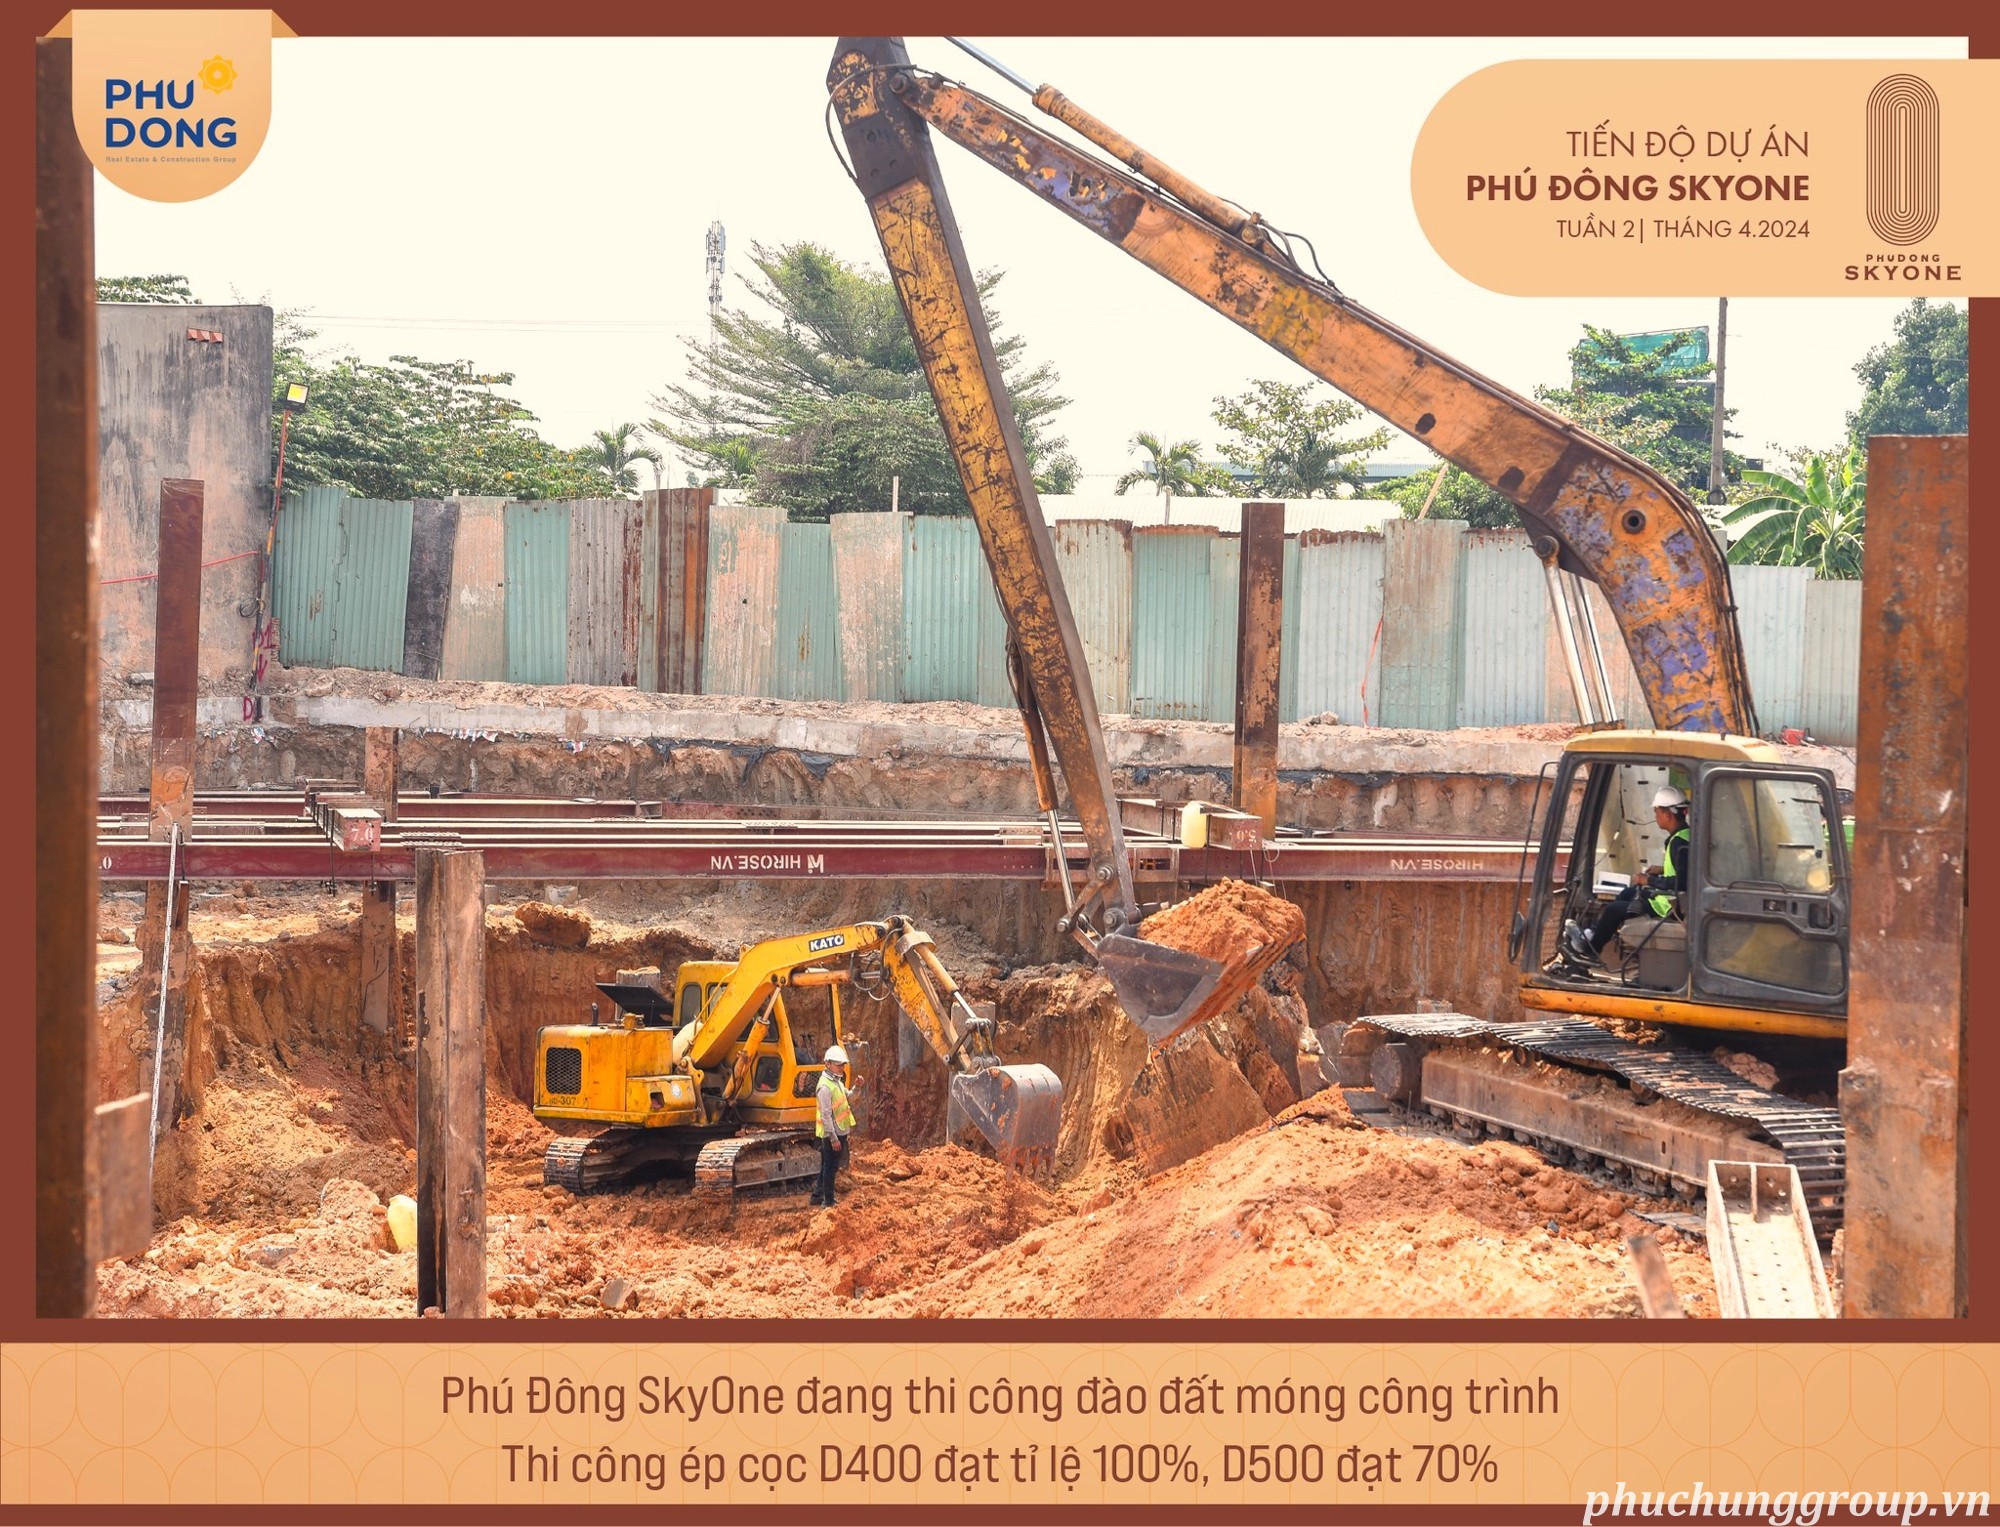 Tiến độ xây dựng dự án Phú Đông SkyoNE 4.2024